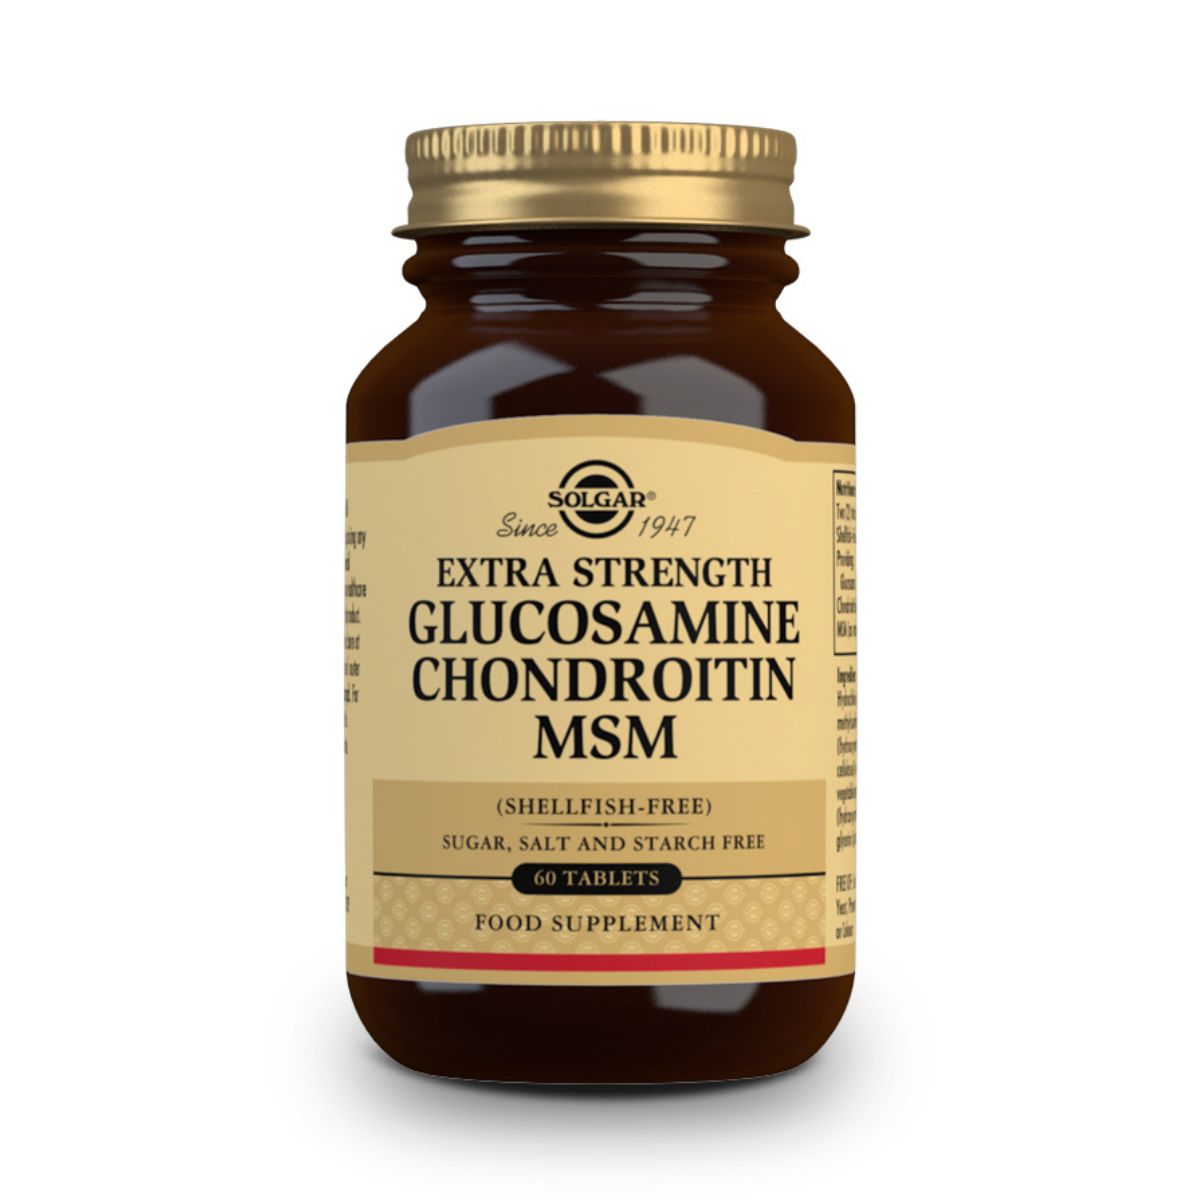 Glucosamina Condroitina MSM Concentrado – 60 Comprimidos